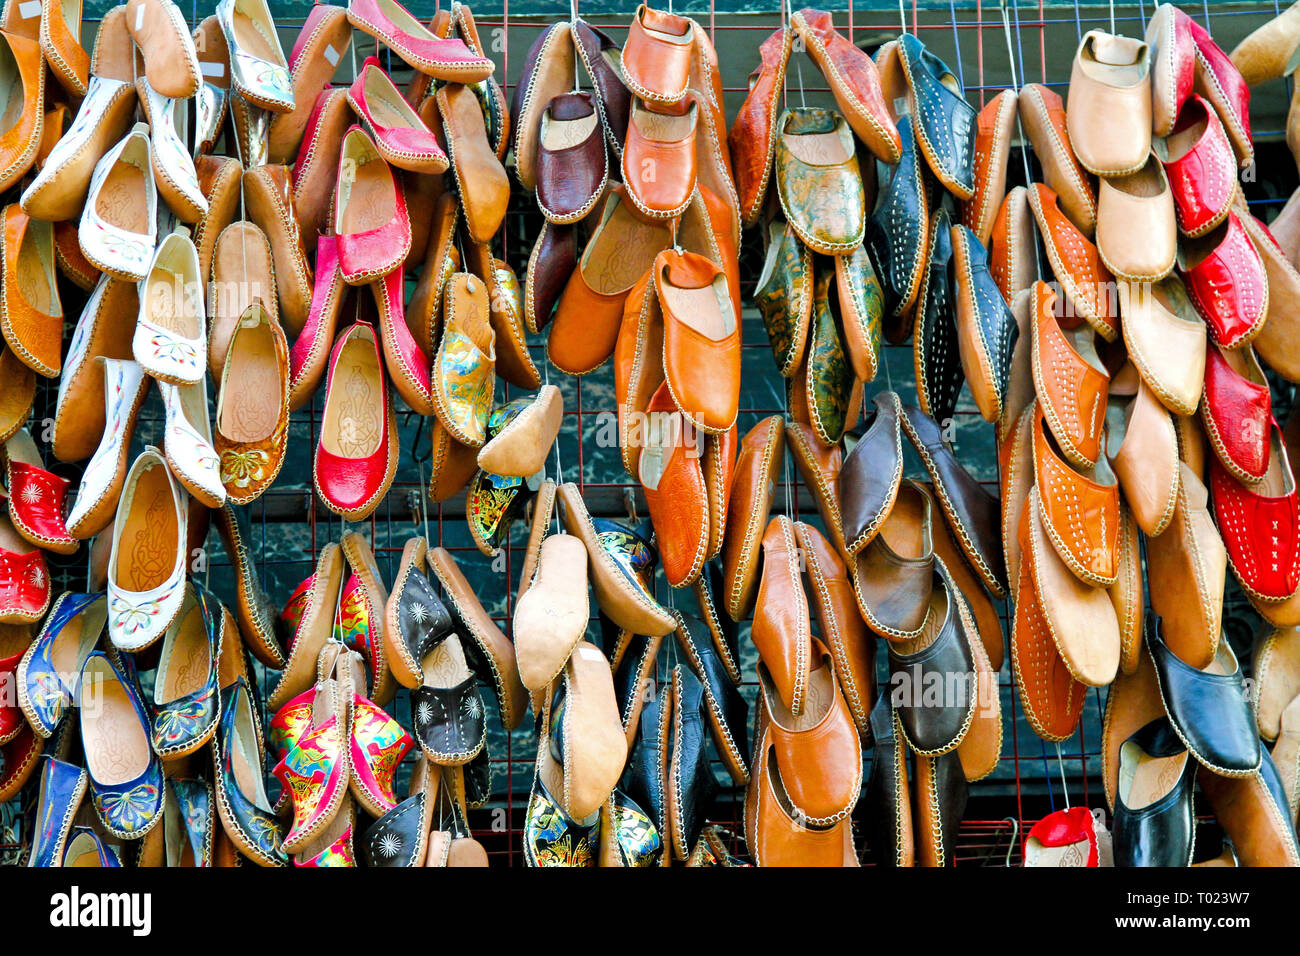 Ägyptische Leder Schuhe auf dem Markt verkauft Stockfotografie - Alamy